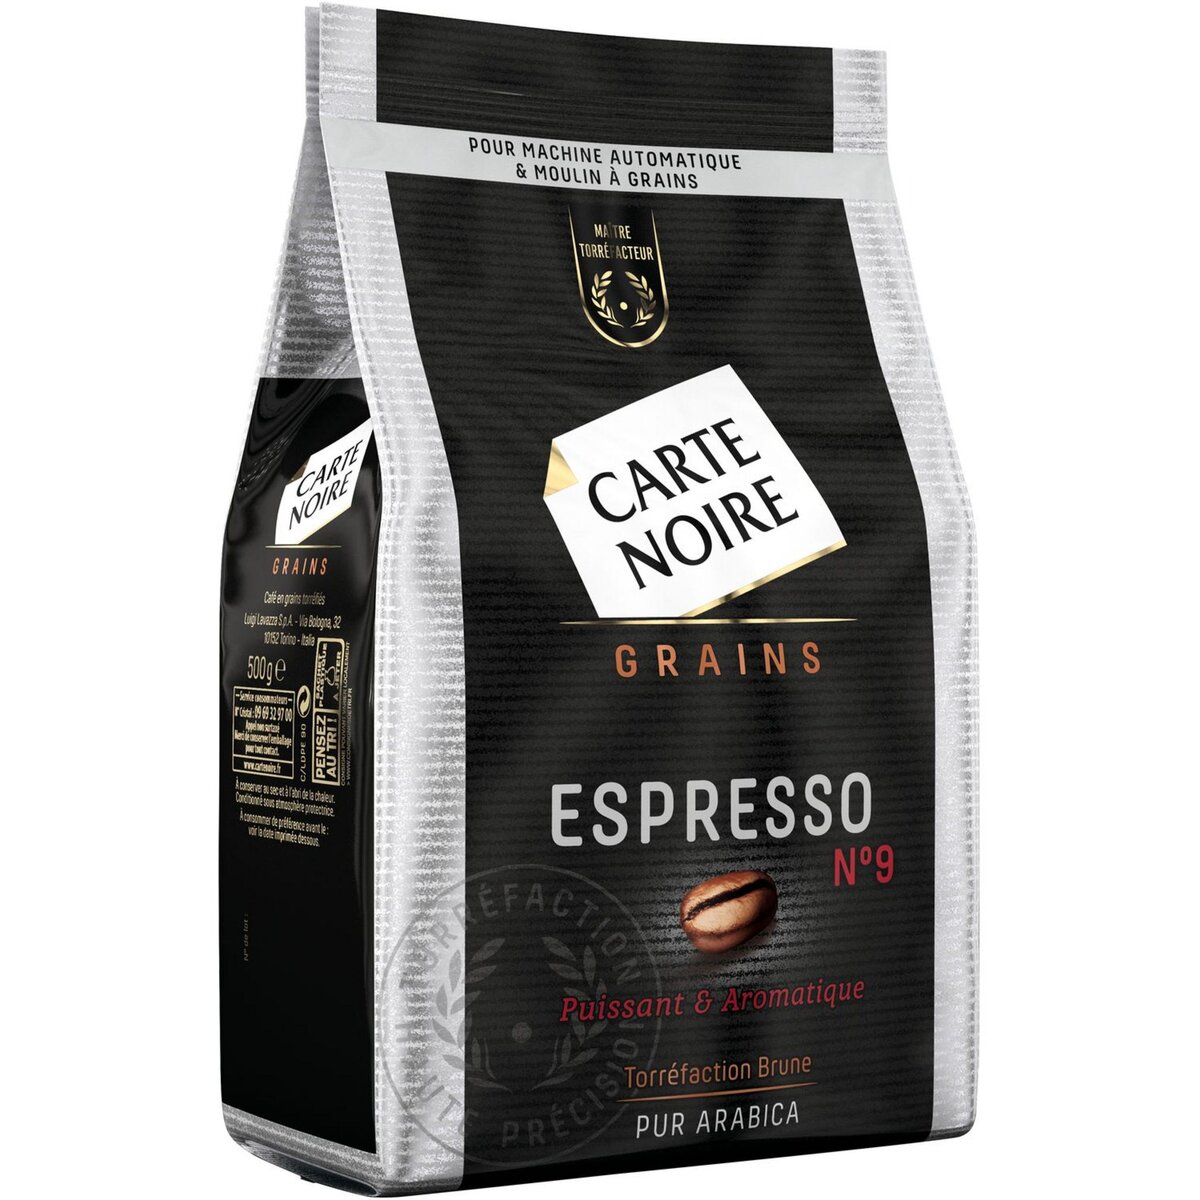 CARTE NOIRE Café en grain Espresso n°9 500g